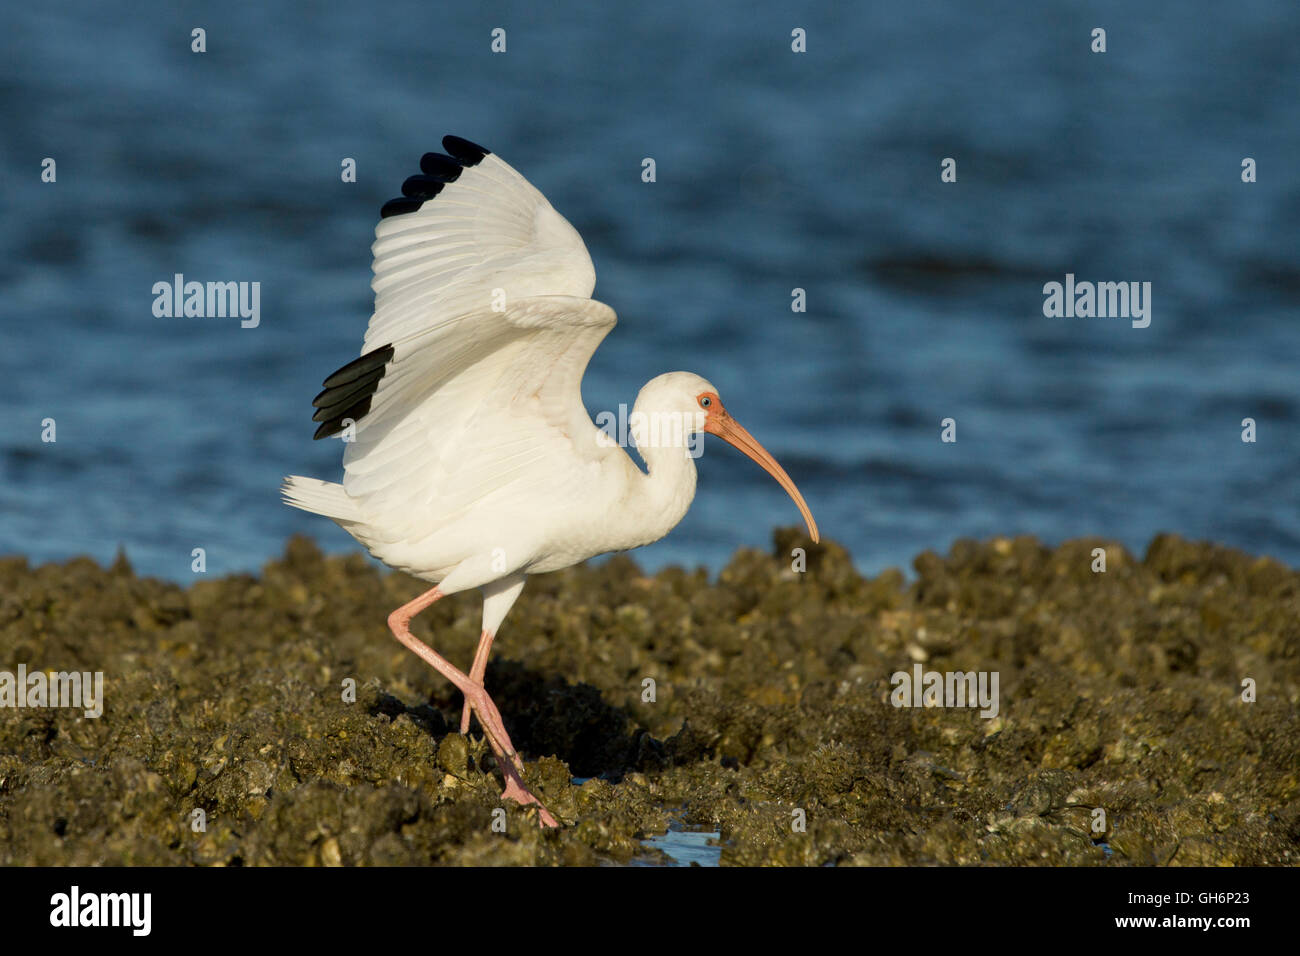 A white ibis on Chokoloskee Bay Stock Photo